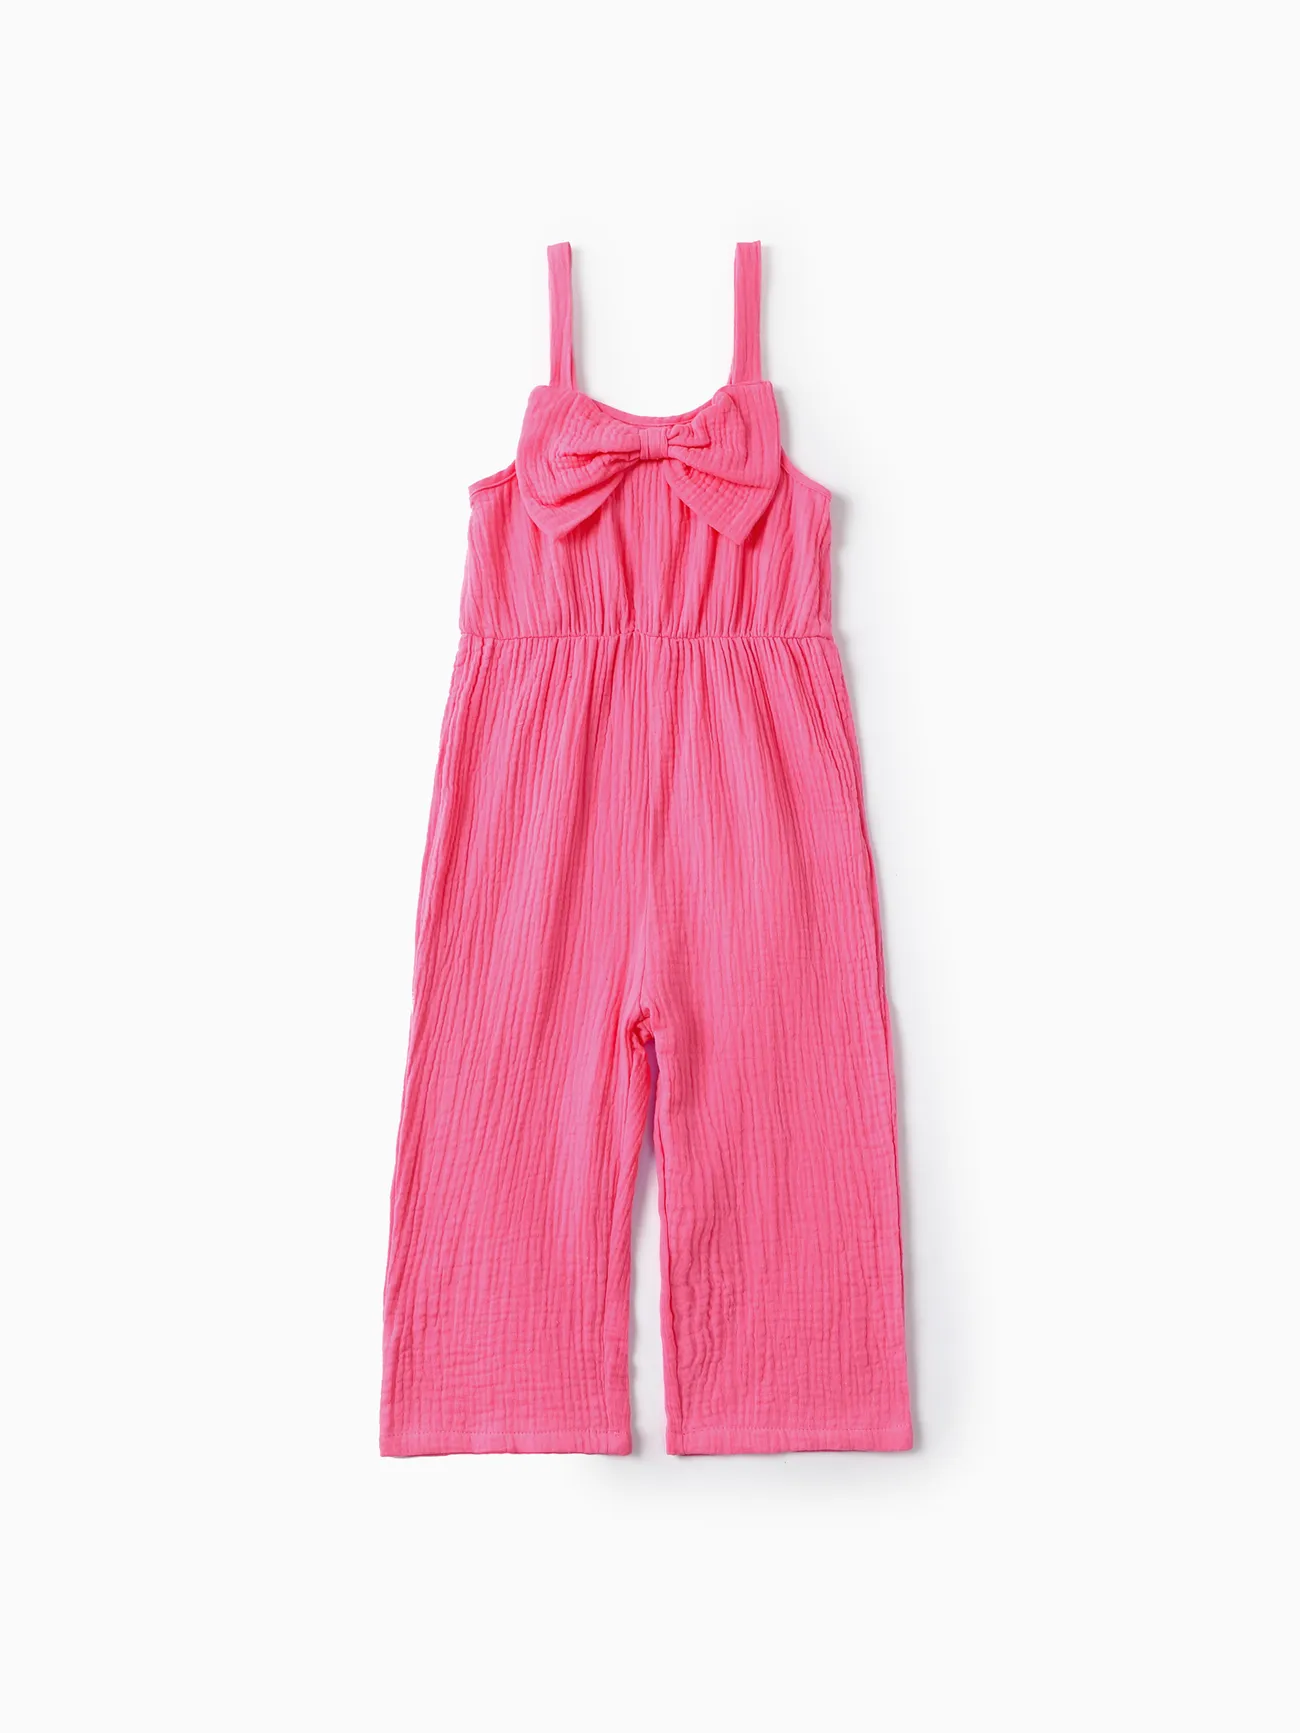 Toddler Girls Sweet Hanging Strap Design Pink Cotton Romper Pink big image 1